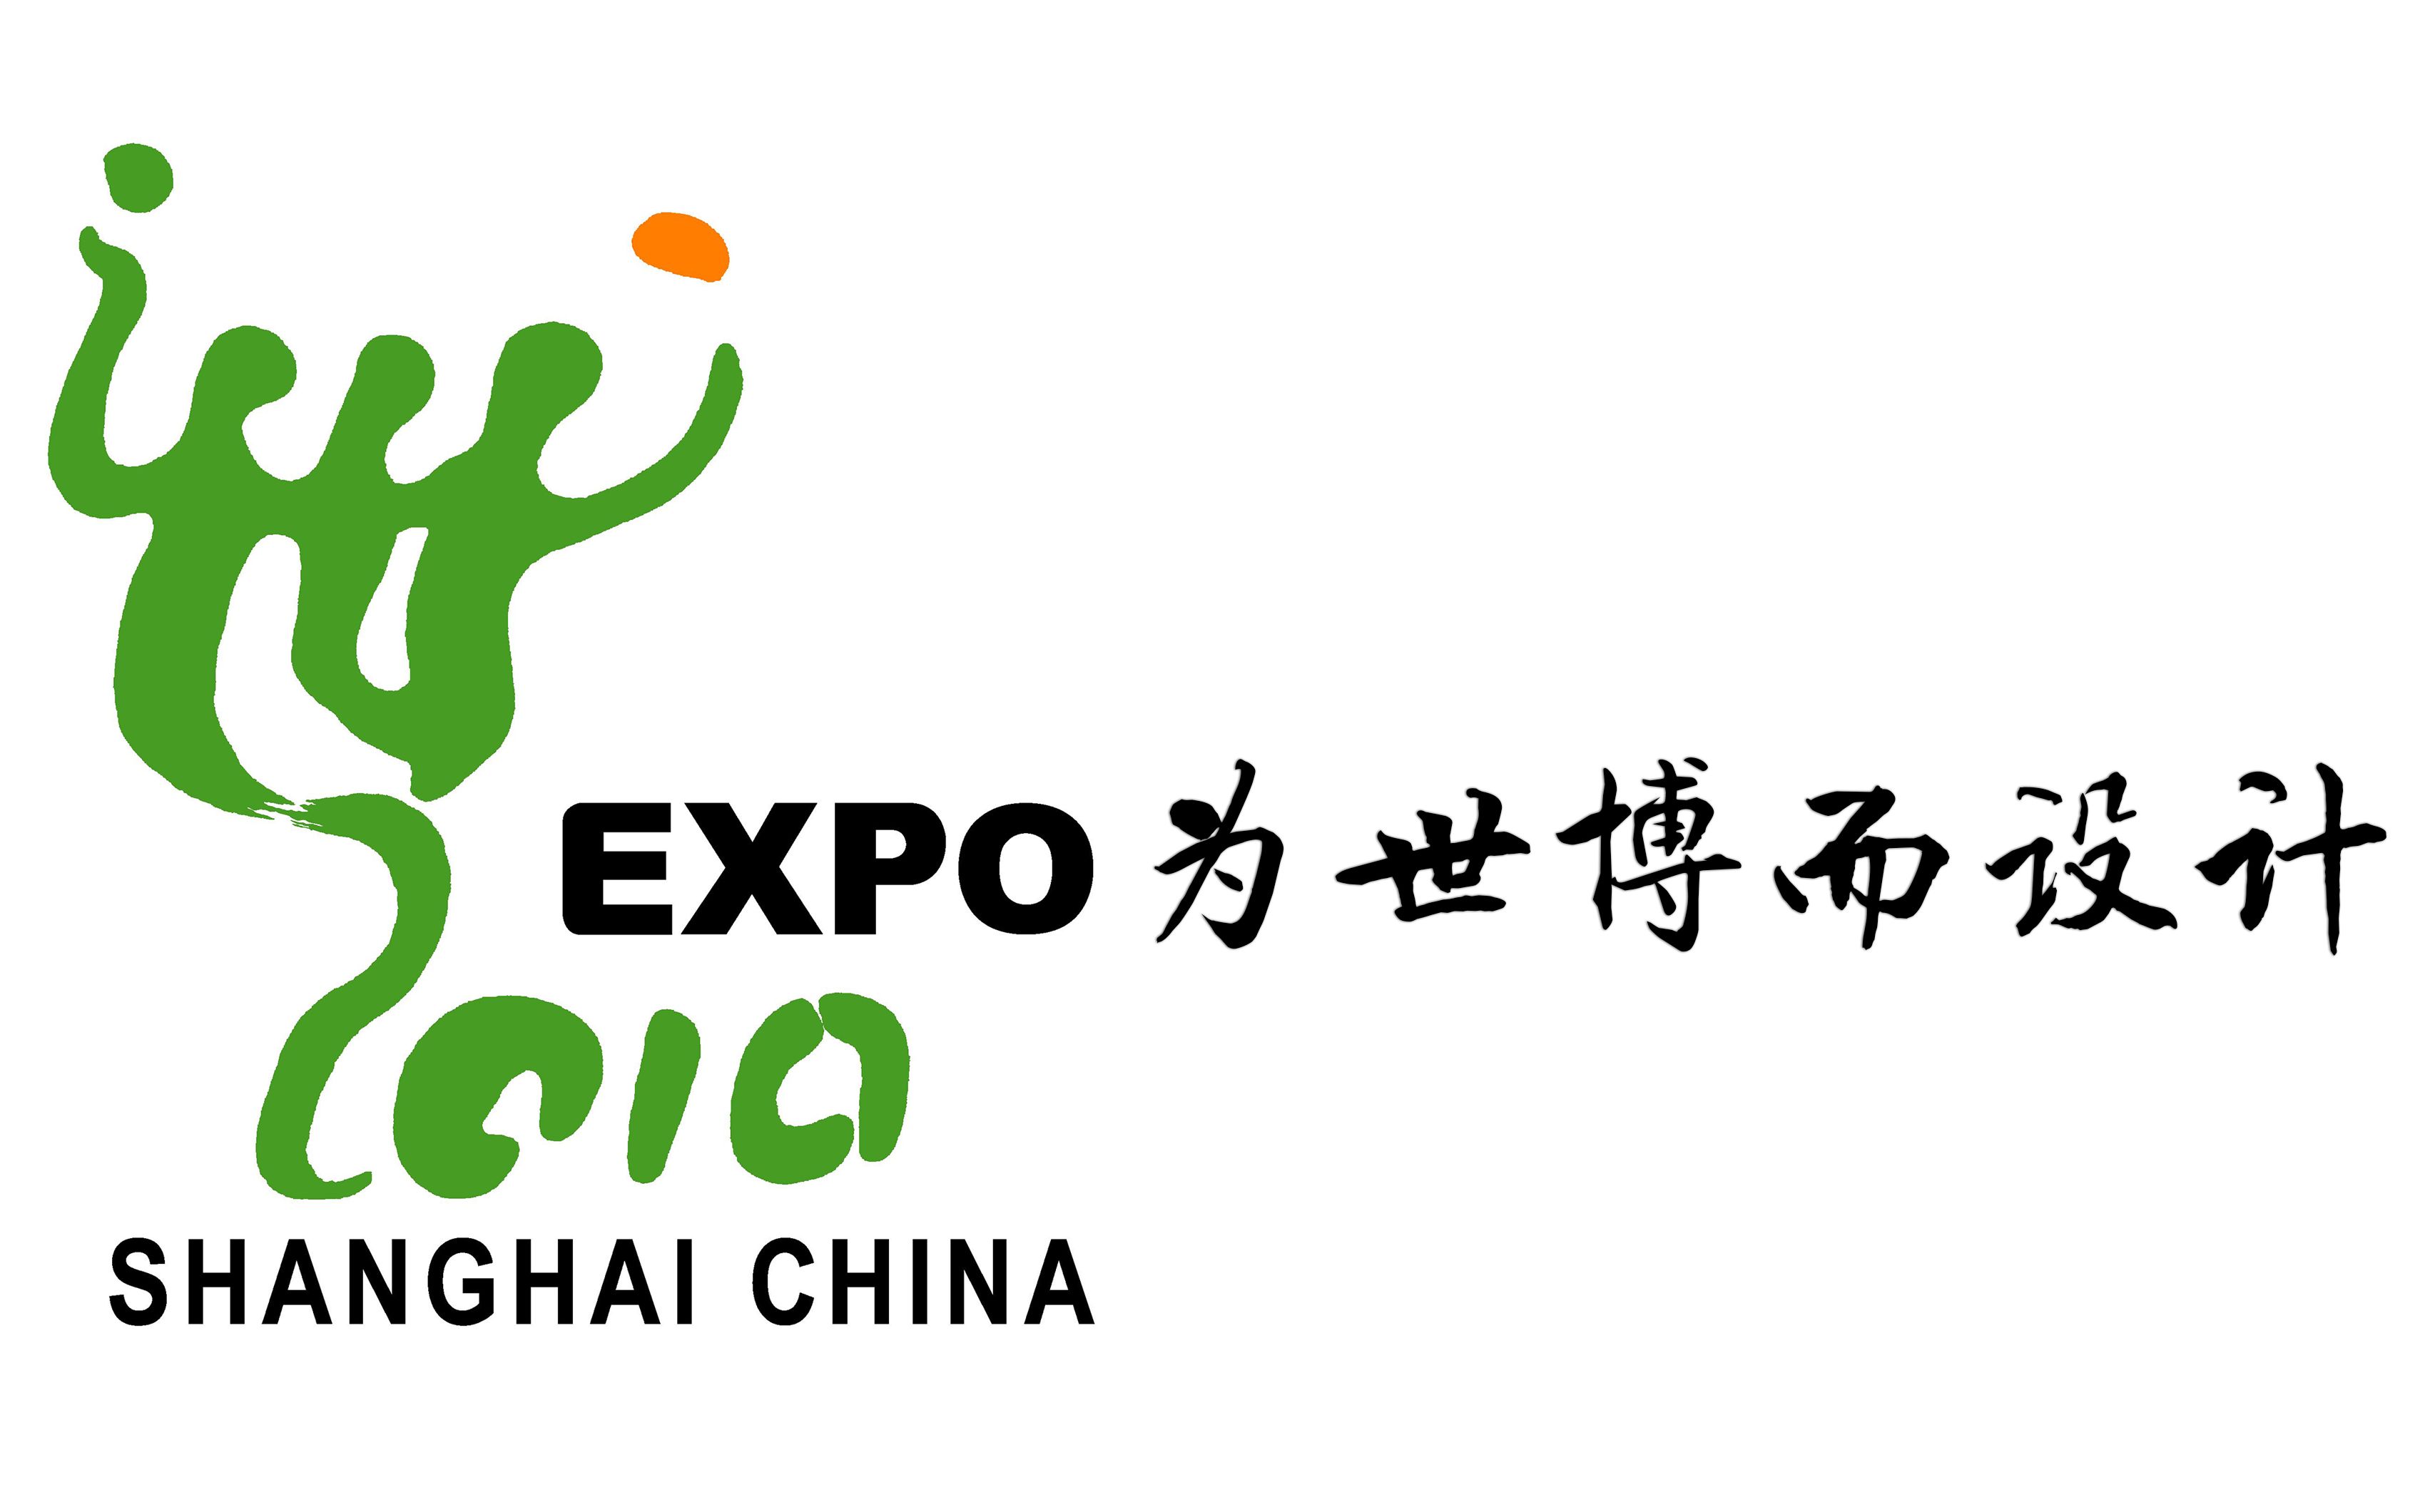 上海世博会logo含义图片